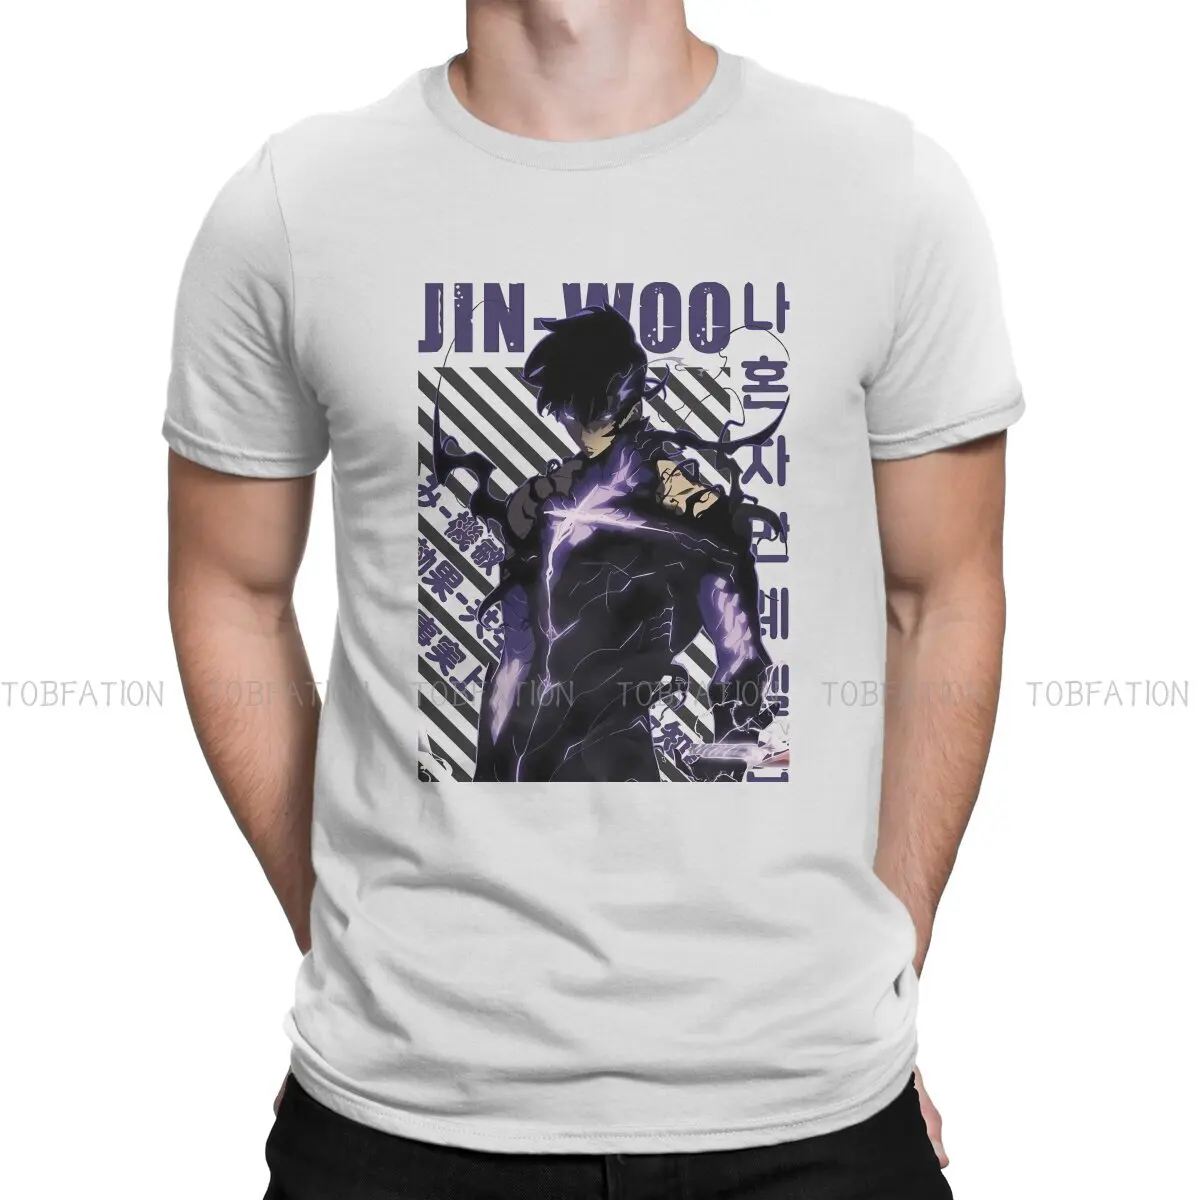 

Футболка с коротким рукавом Jin Woo Sung, уникальная футболка с соло-выравниванием, удобная футболка в стиле хип-хоп, подарок